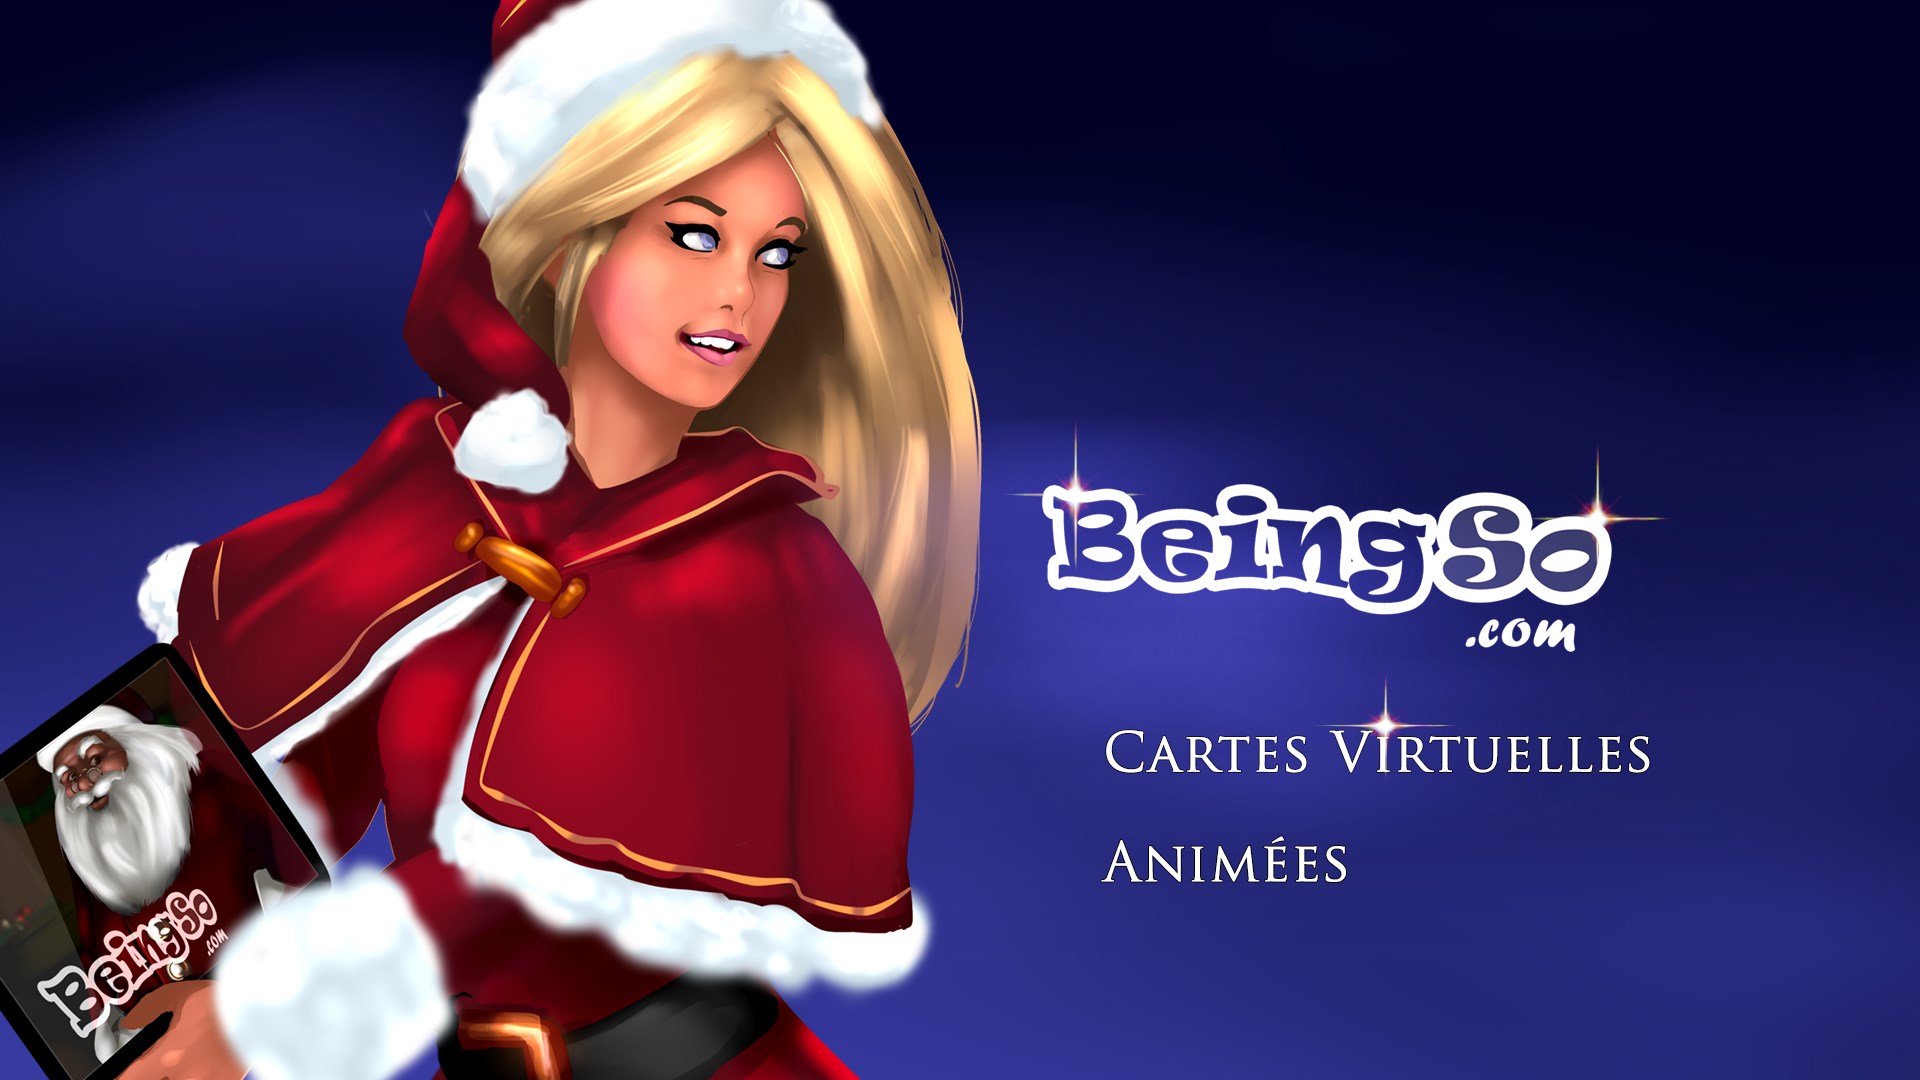 Recevoir Cartes Virtuelles Animees Beingso Com Noel Nouvel An 18 Joyeux Anniversaire Microsoft Store Fr Dj